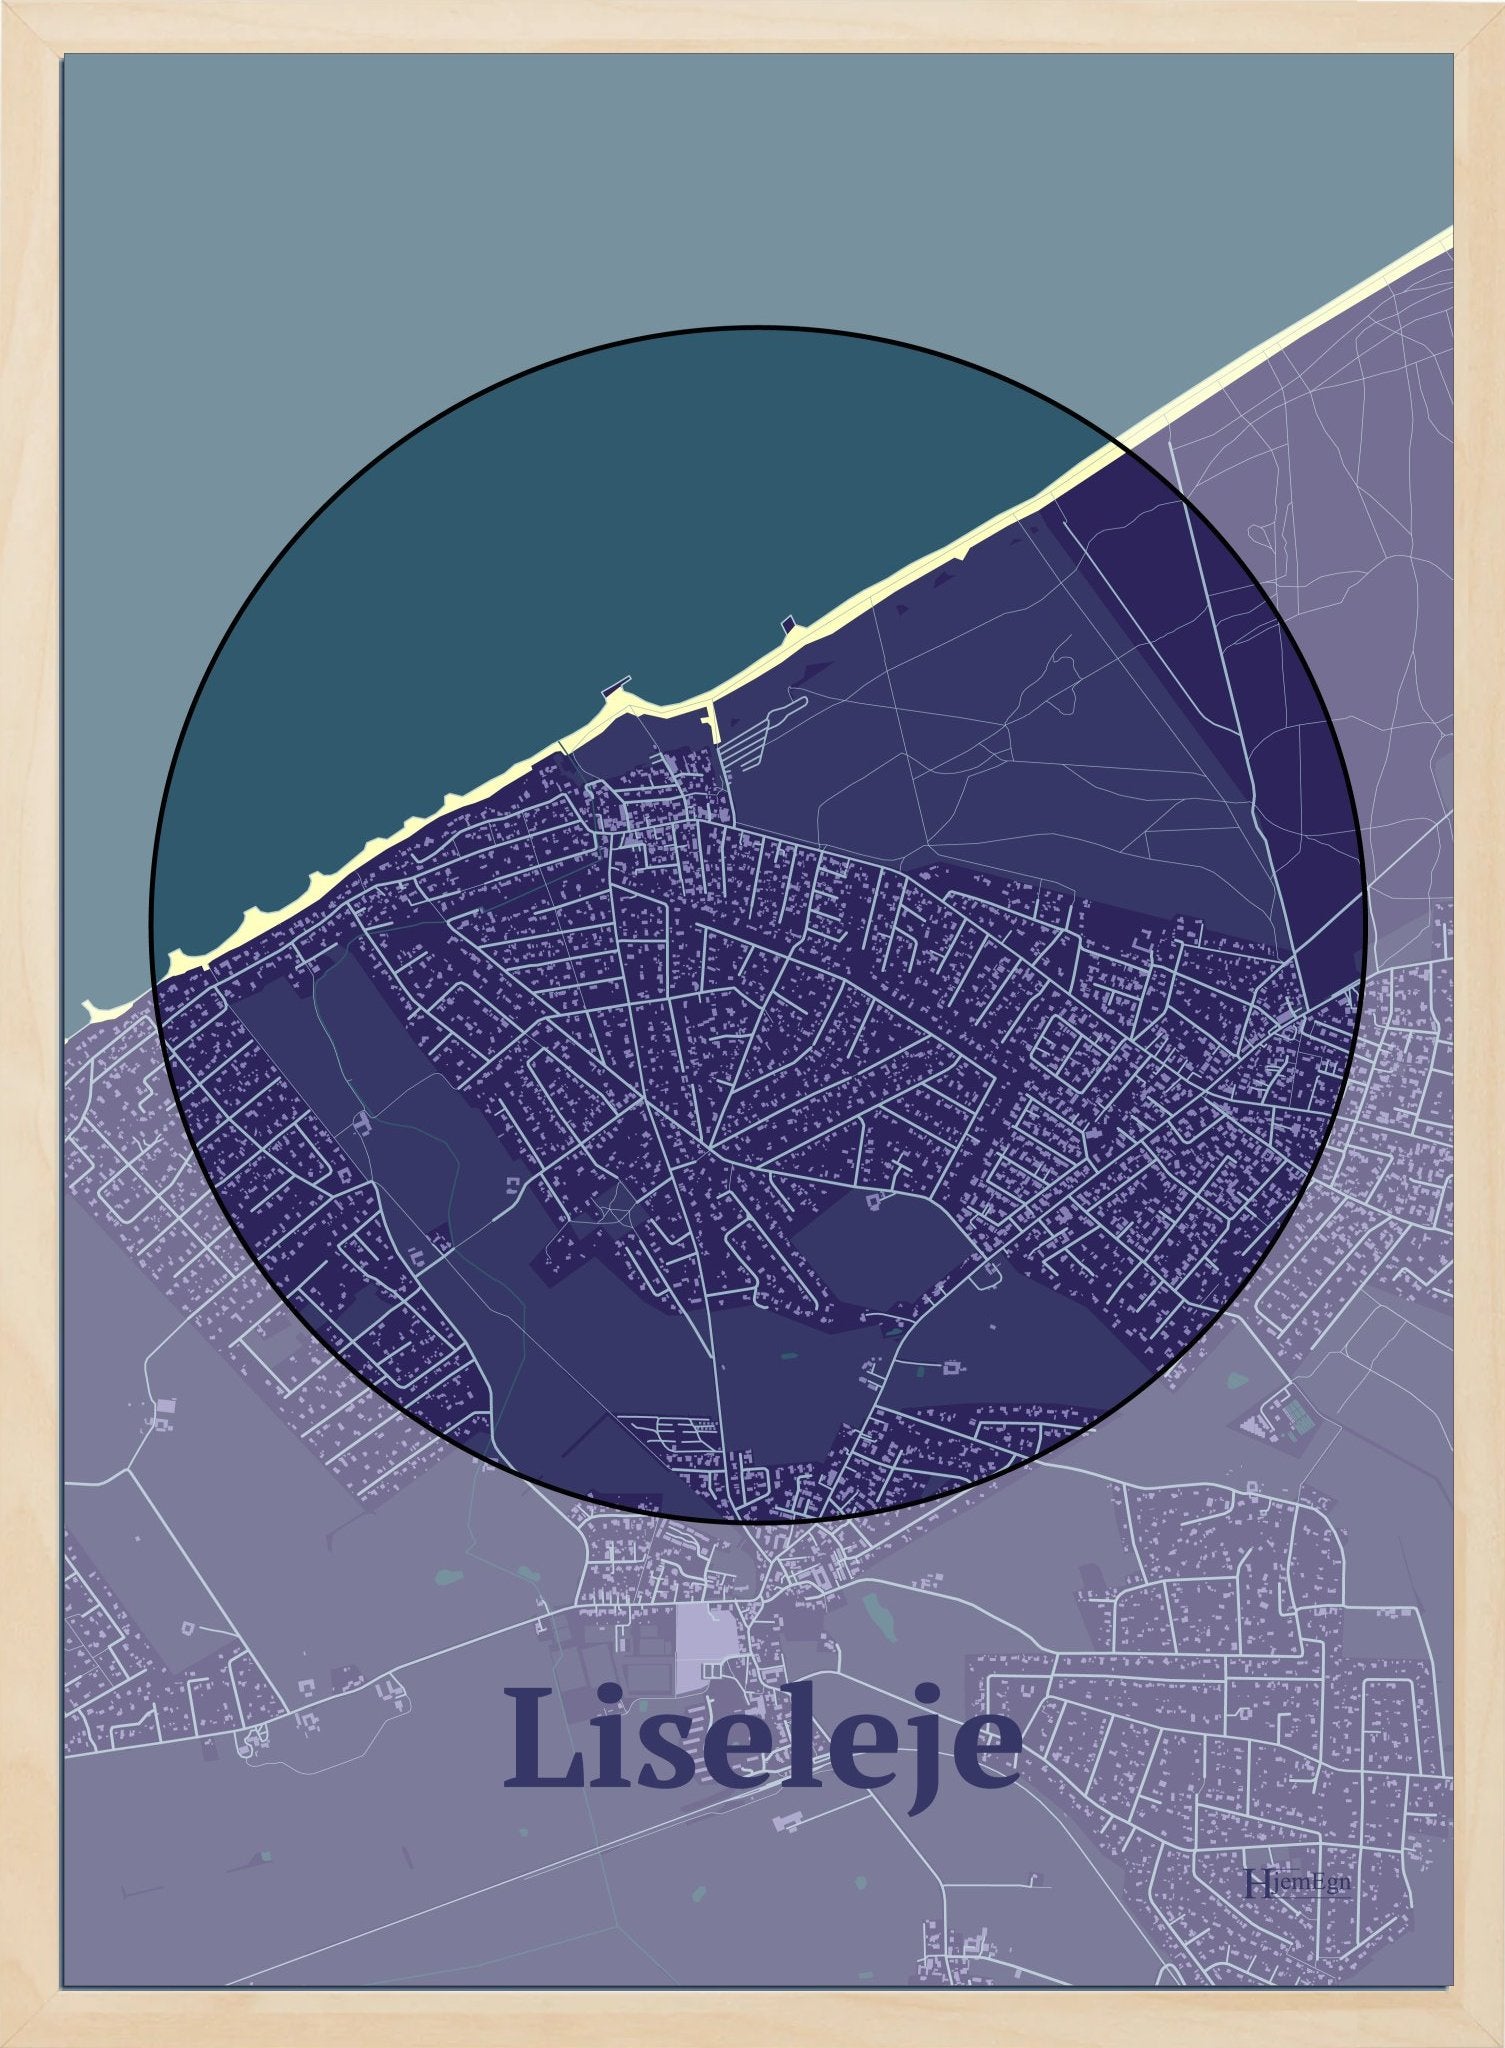 Liseleje plakat i farve mørk lilla og HjemEgn.dk design centrum. Design bykort for Liseleje